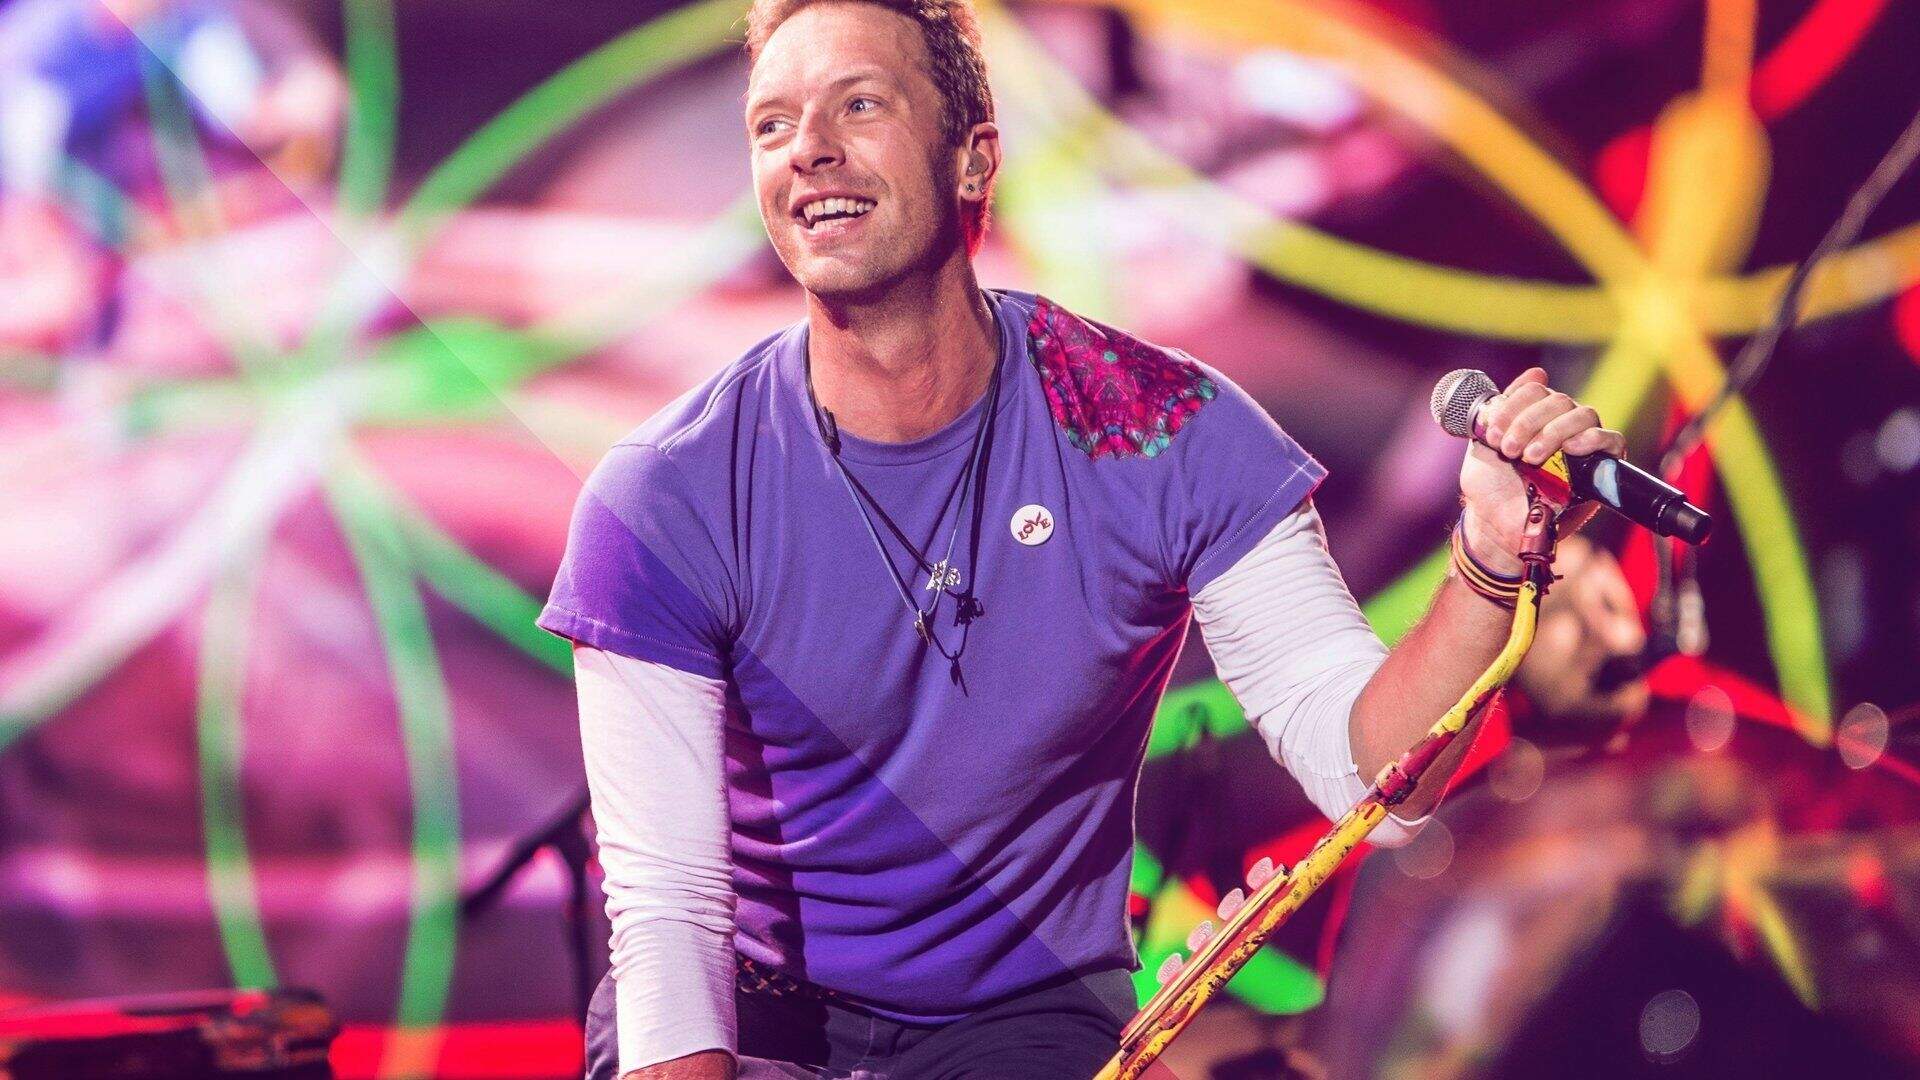 Chris Martin é um cantor britânico, conhecido por ser o vocalista da banda Coldplay desde 1996